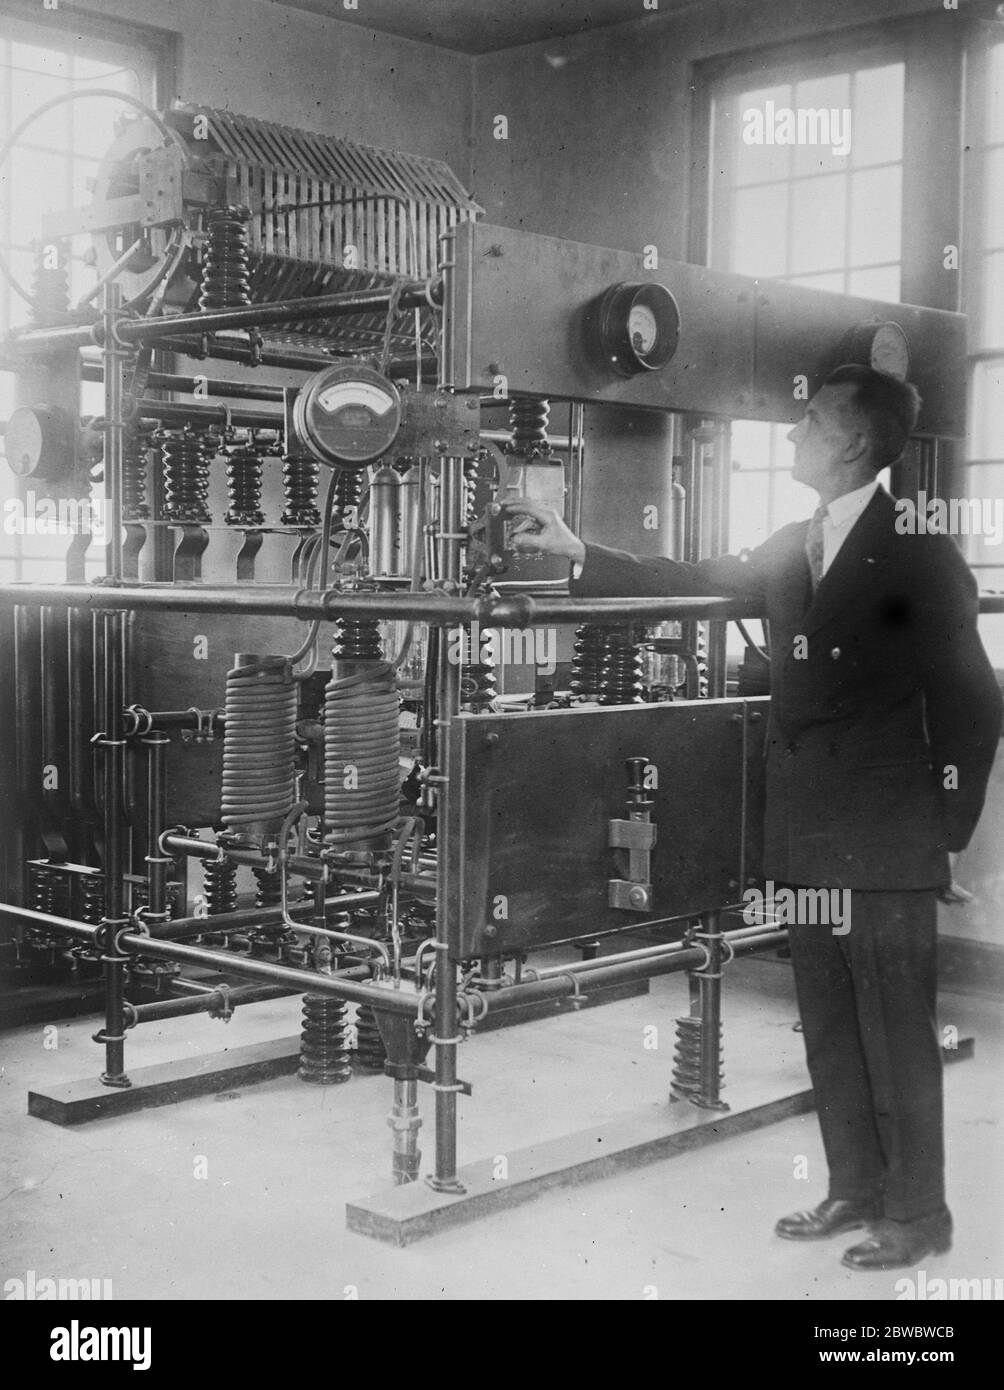 Uno sguardo alla nuova stazione di radiodiffusione americana di Bound Brook, New Jersey, il signor D N Stair , capo ingegnere della nuova stazione sperimentale di radio Corporation a N J, presso uno dei due trasmettitori da 40 kilowatt, il 9 gennaio 1926 Foto Stock